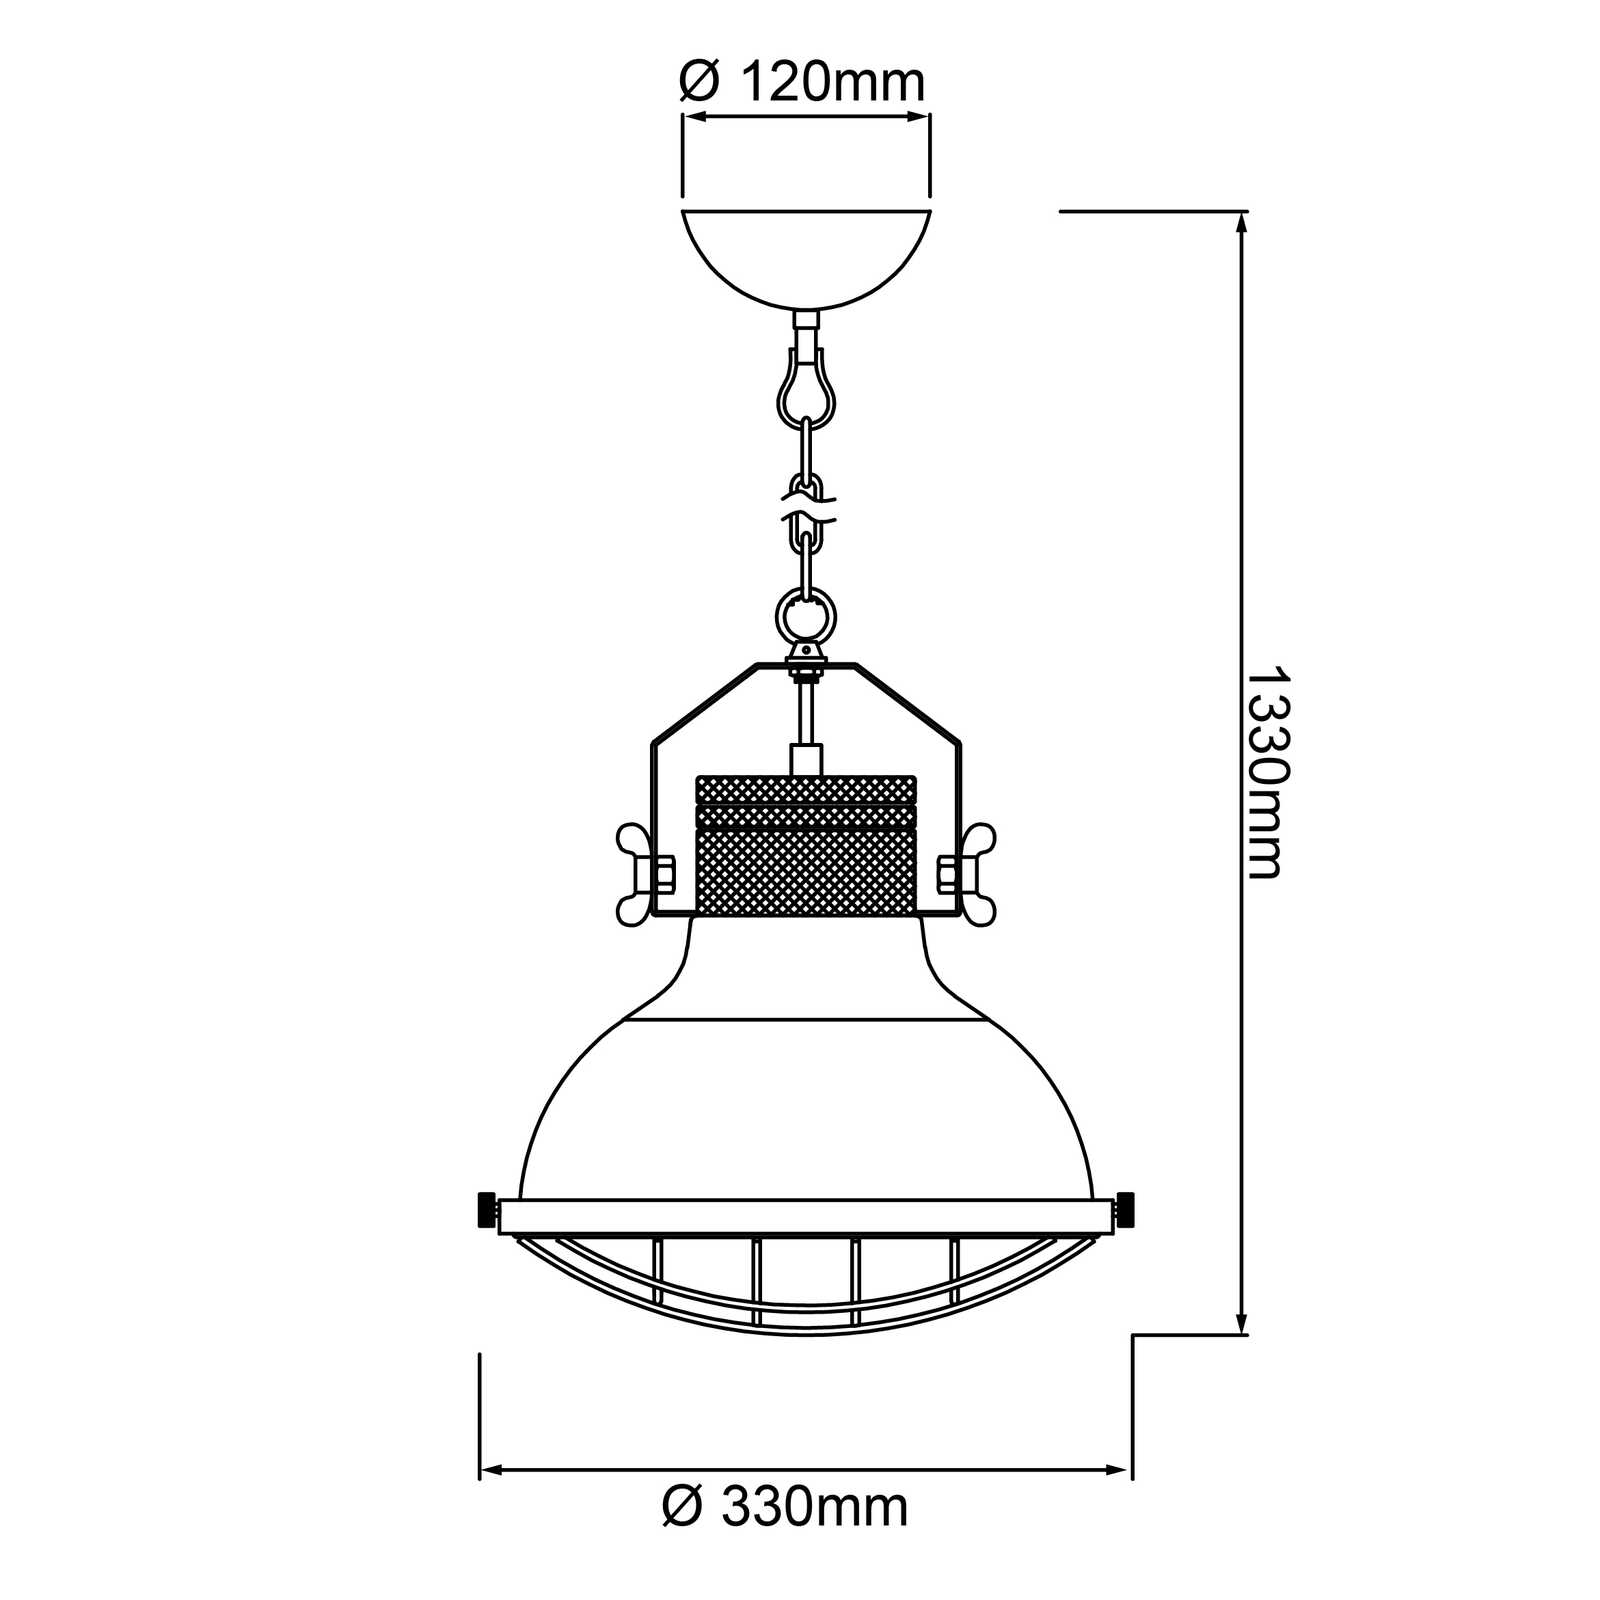             Houten hanglamp - Florian 1 - Zwart
        